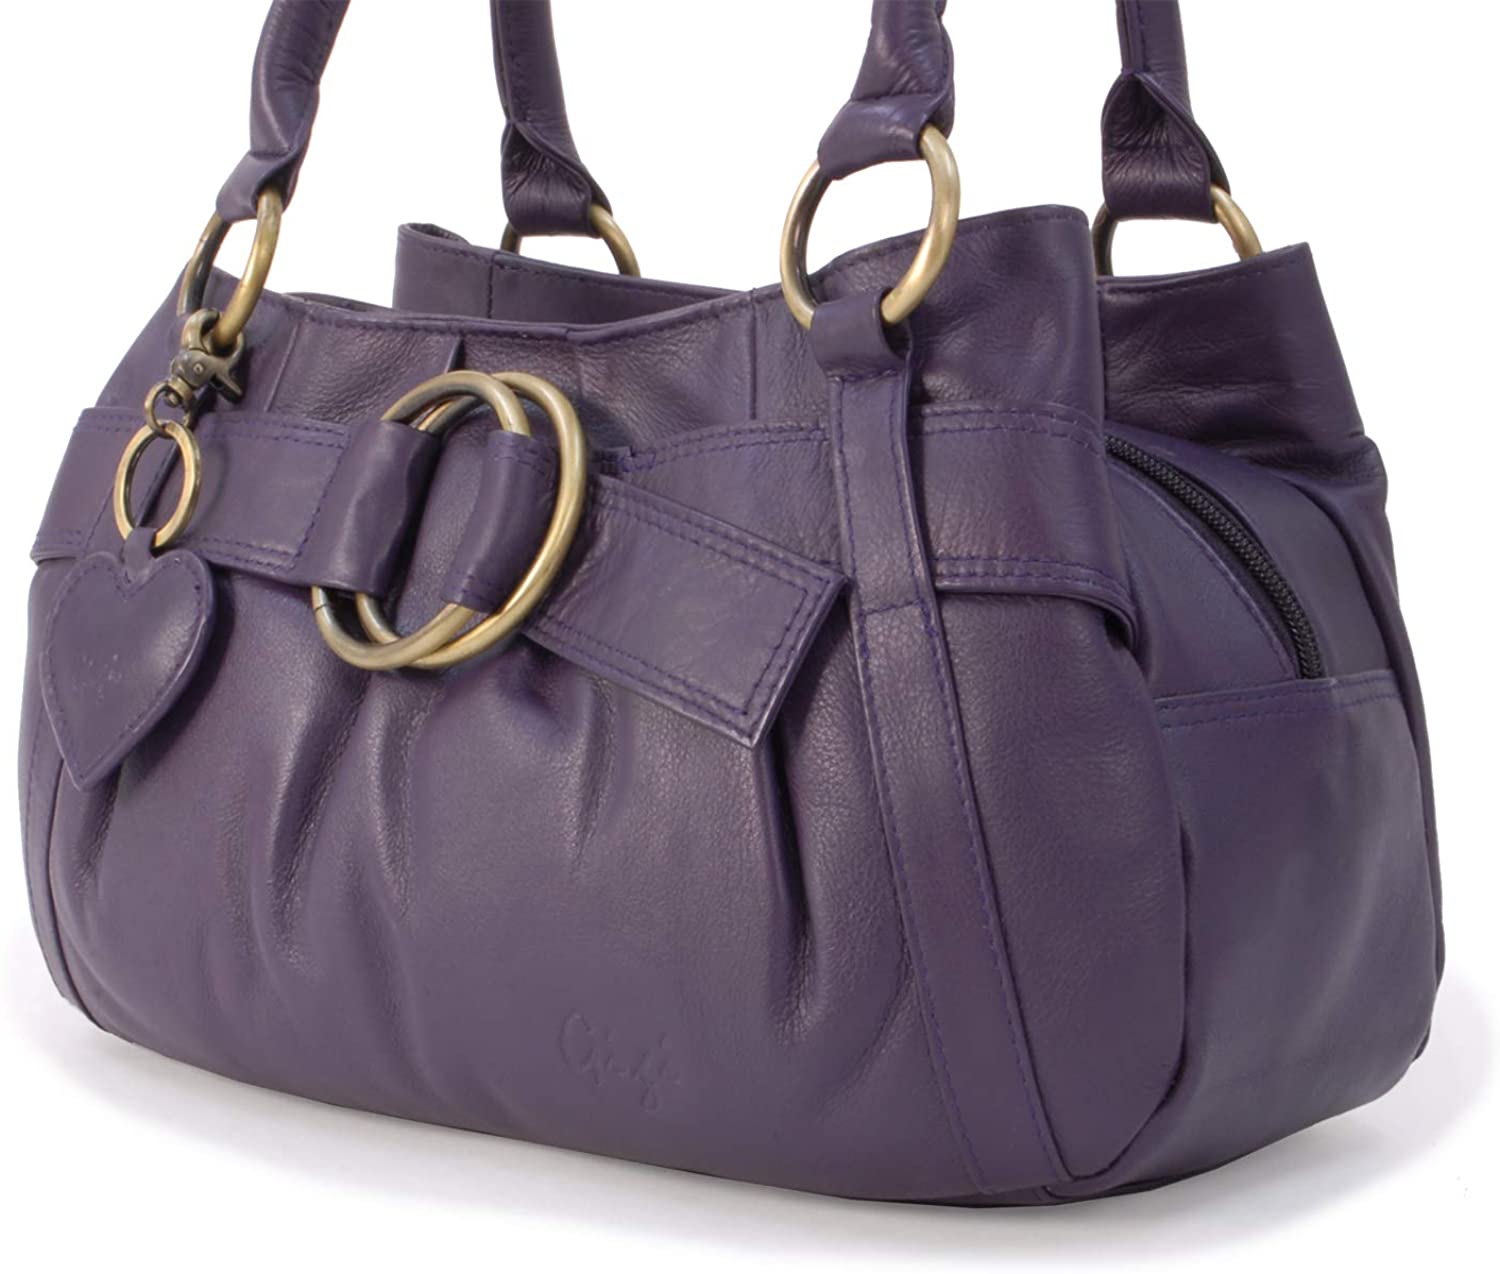 GIGI â Womenâs Leather Top Handle Handbag/Shoulder Bag â OTHELLO 4466 â BigaMart